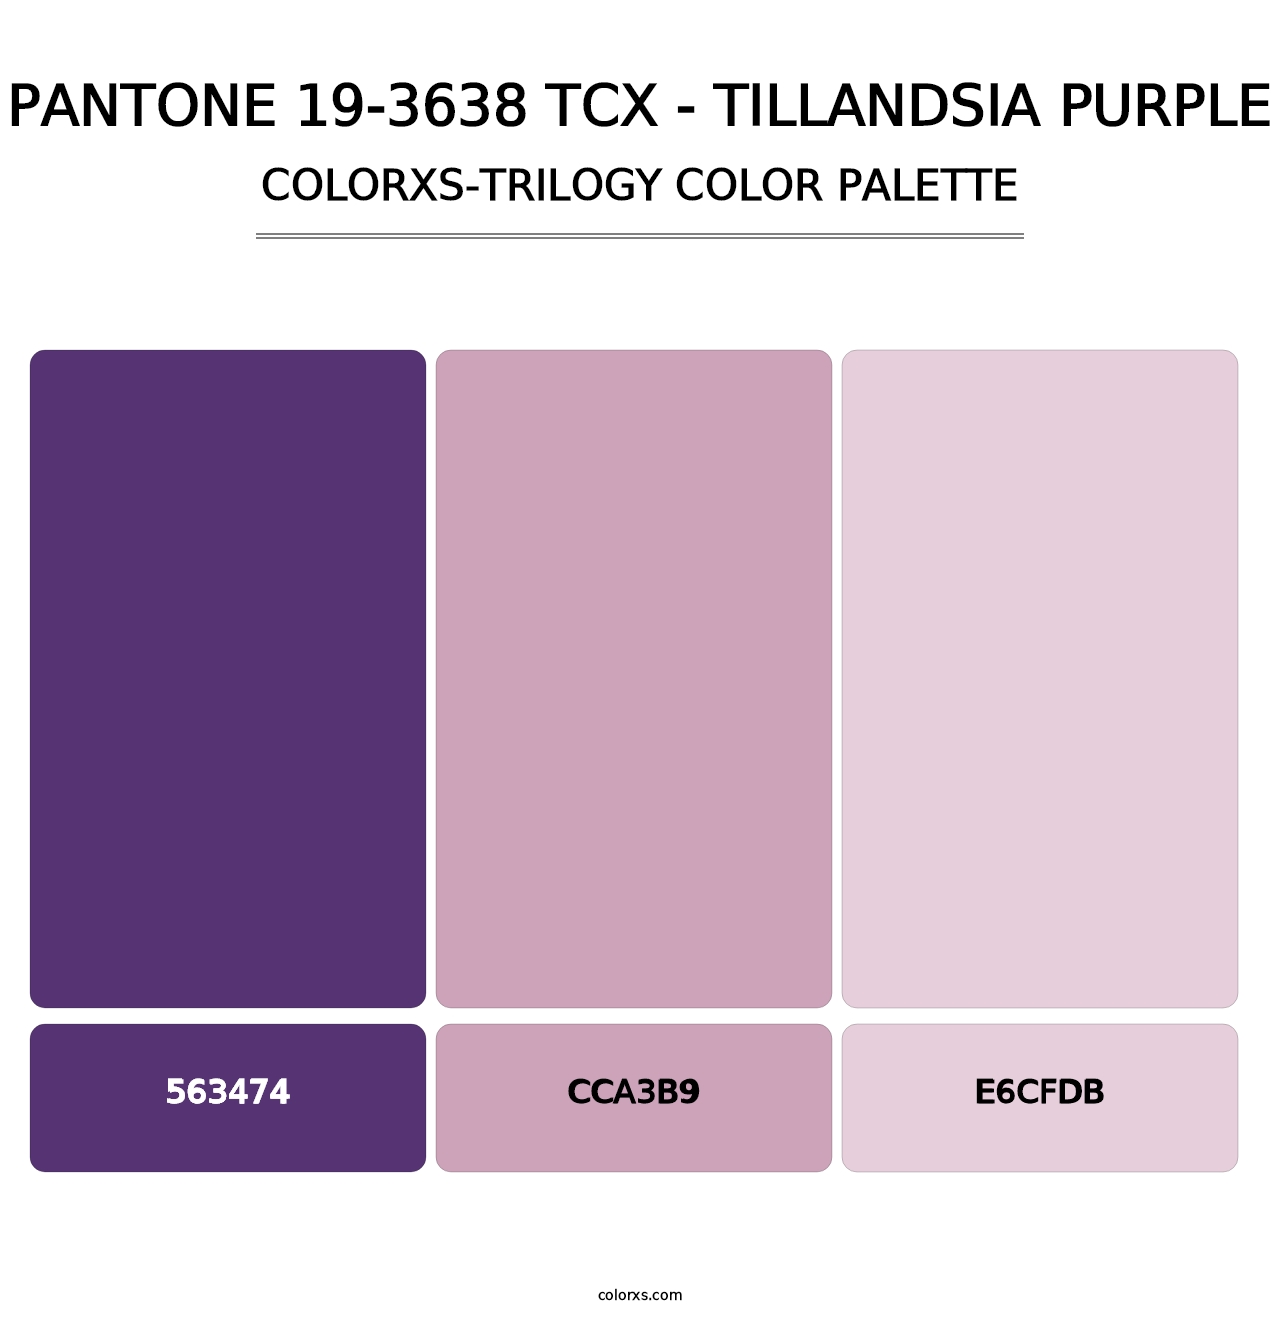 PANTONE 19-3638 TCX - Tillandsia Purple - Colorxs Trilogy Palette